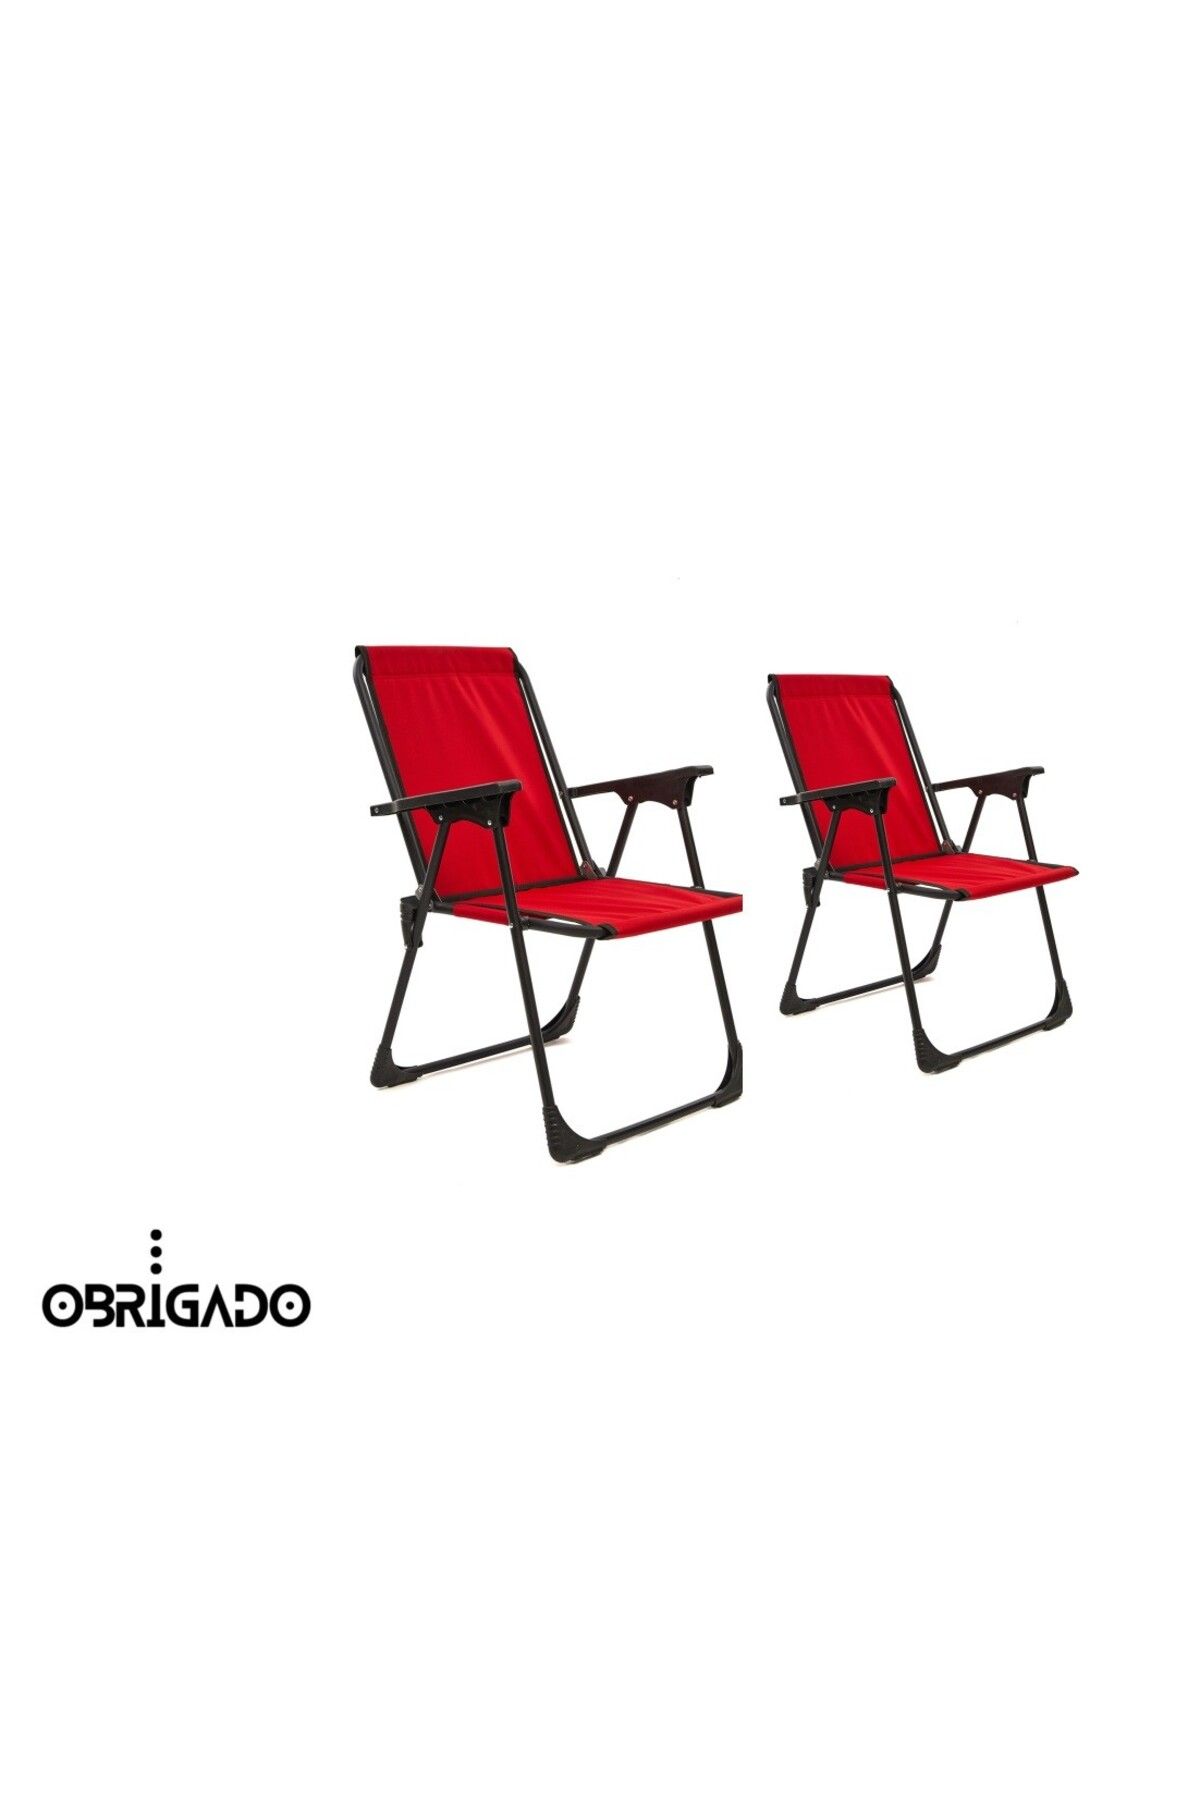 obrigado 2 Adet (İKİLİ) Katlanır Kamp Sandalye Piknik Bahçe Plaj Kullanılır Dayanıklı Ve Ergonomiktir